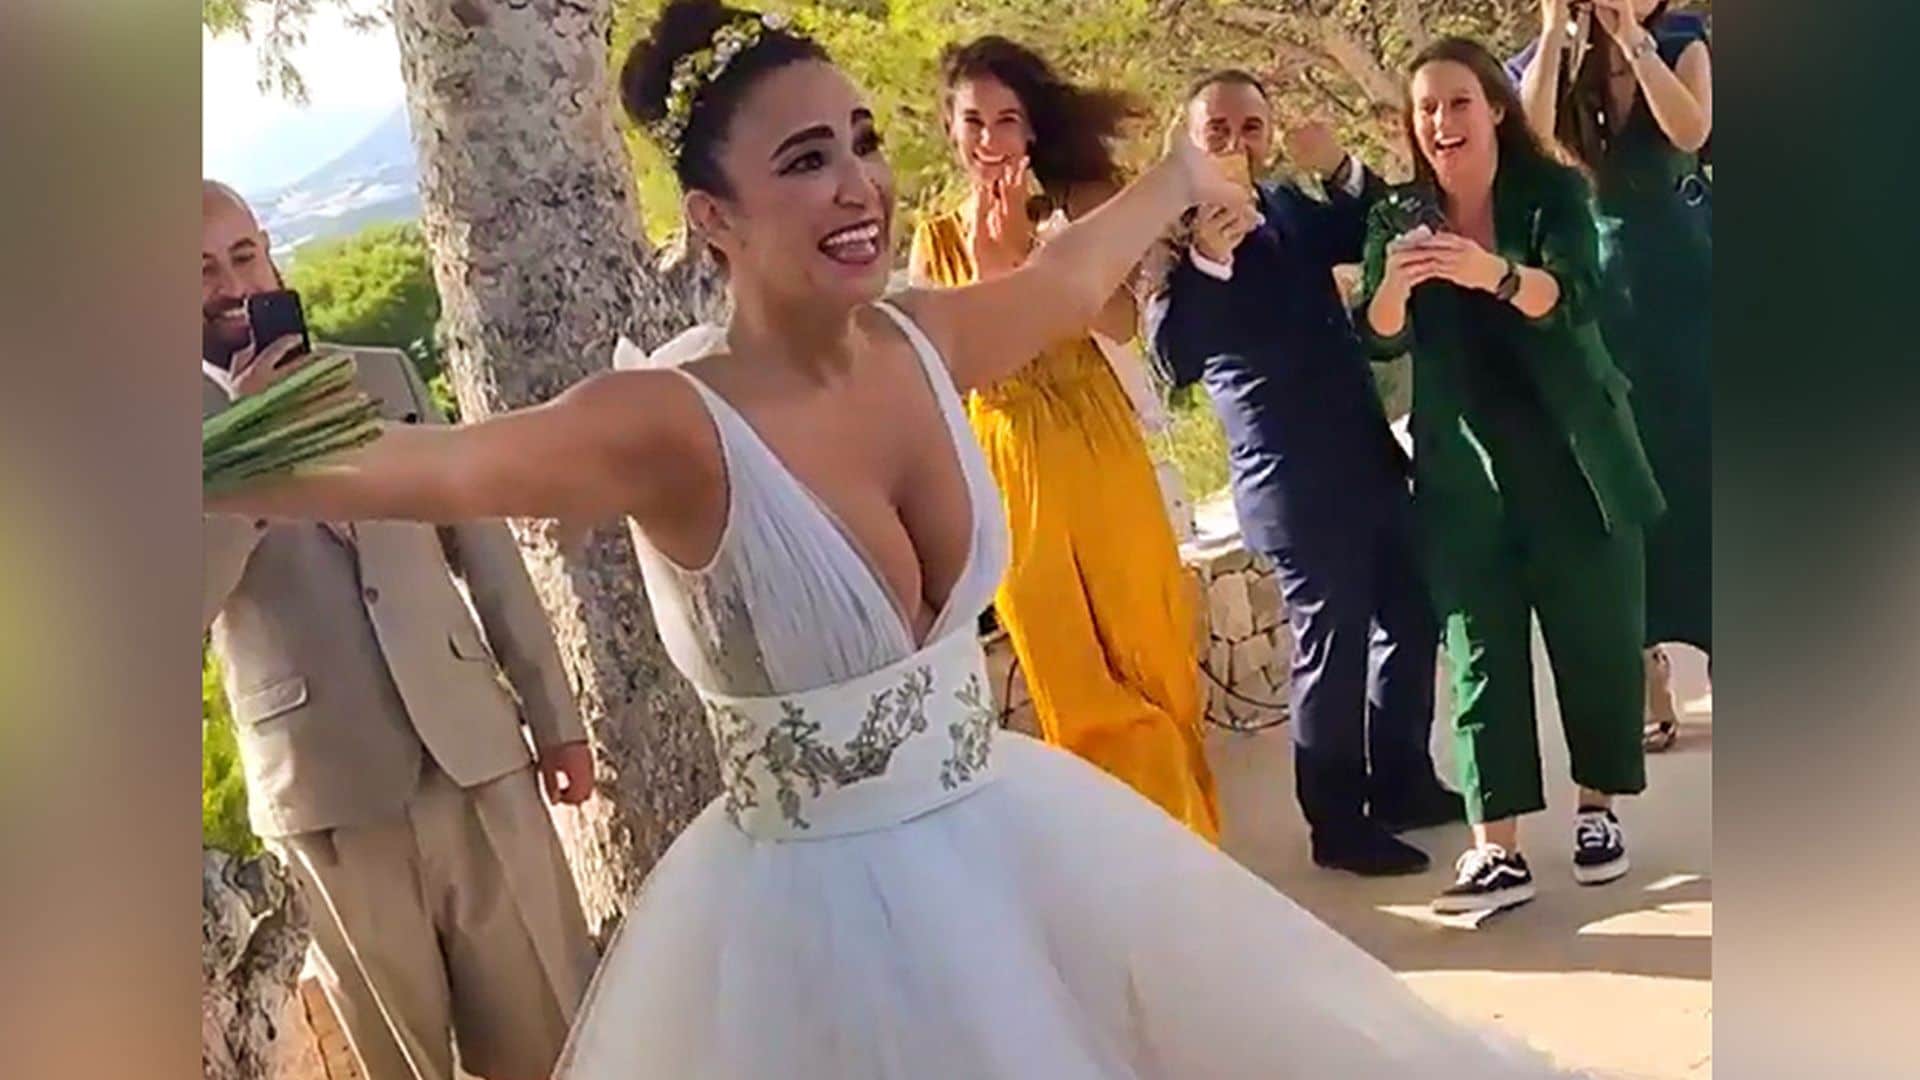 La divertidísima celebración de Cristina Rodríguez en su boda al ritmo de 'Vivo cantando' de Salomé